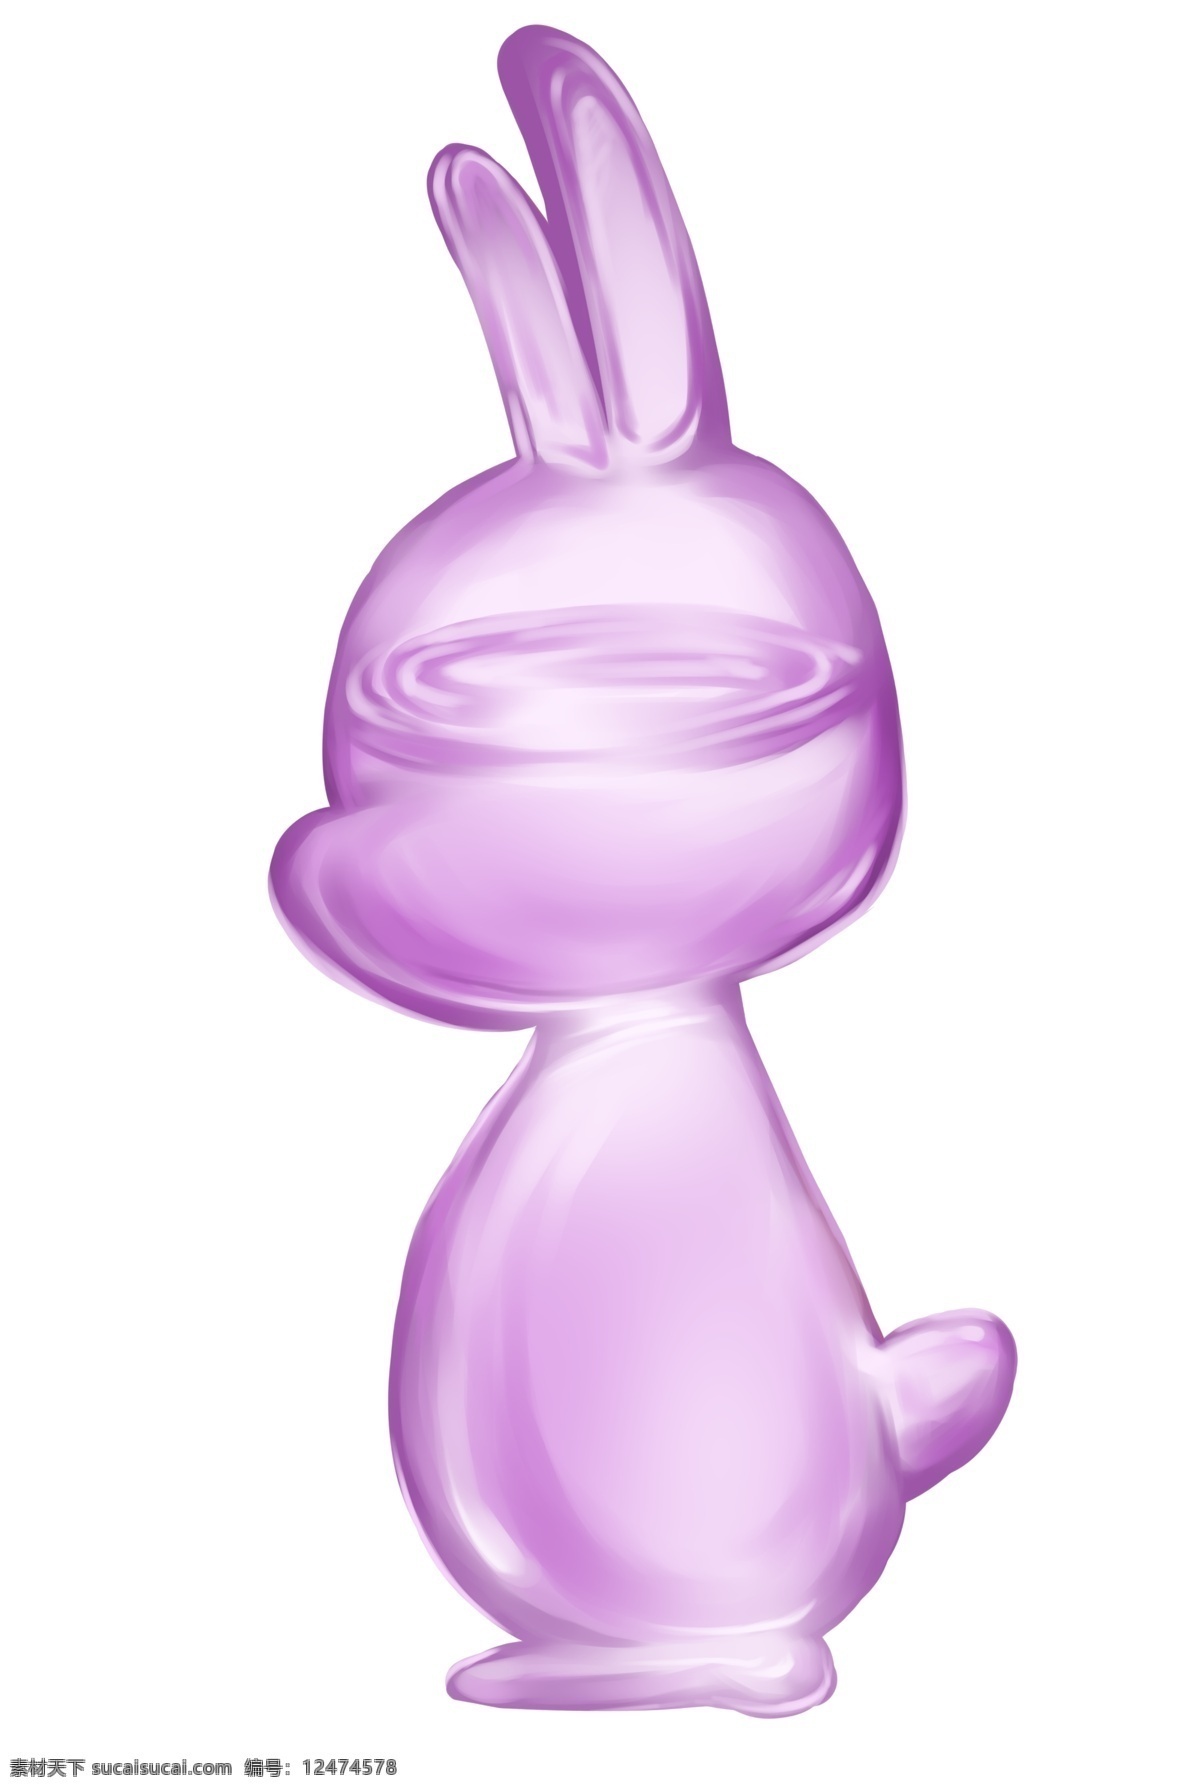 卡通 粉色 玻璃 兔子 玻璃制品 粉色的兔子 玻璃制品插画 卡通兔子插画 创意玻璃插画 玻璃兔子